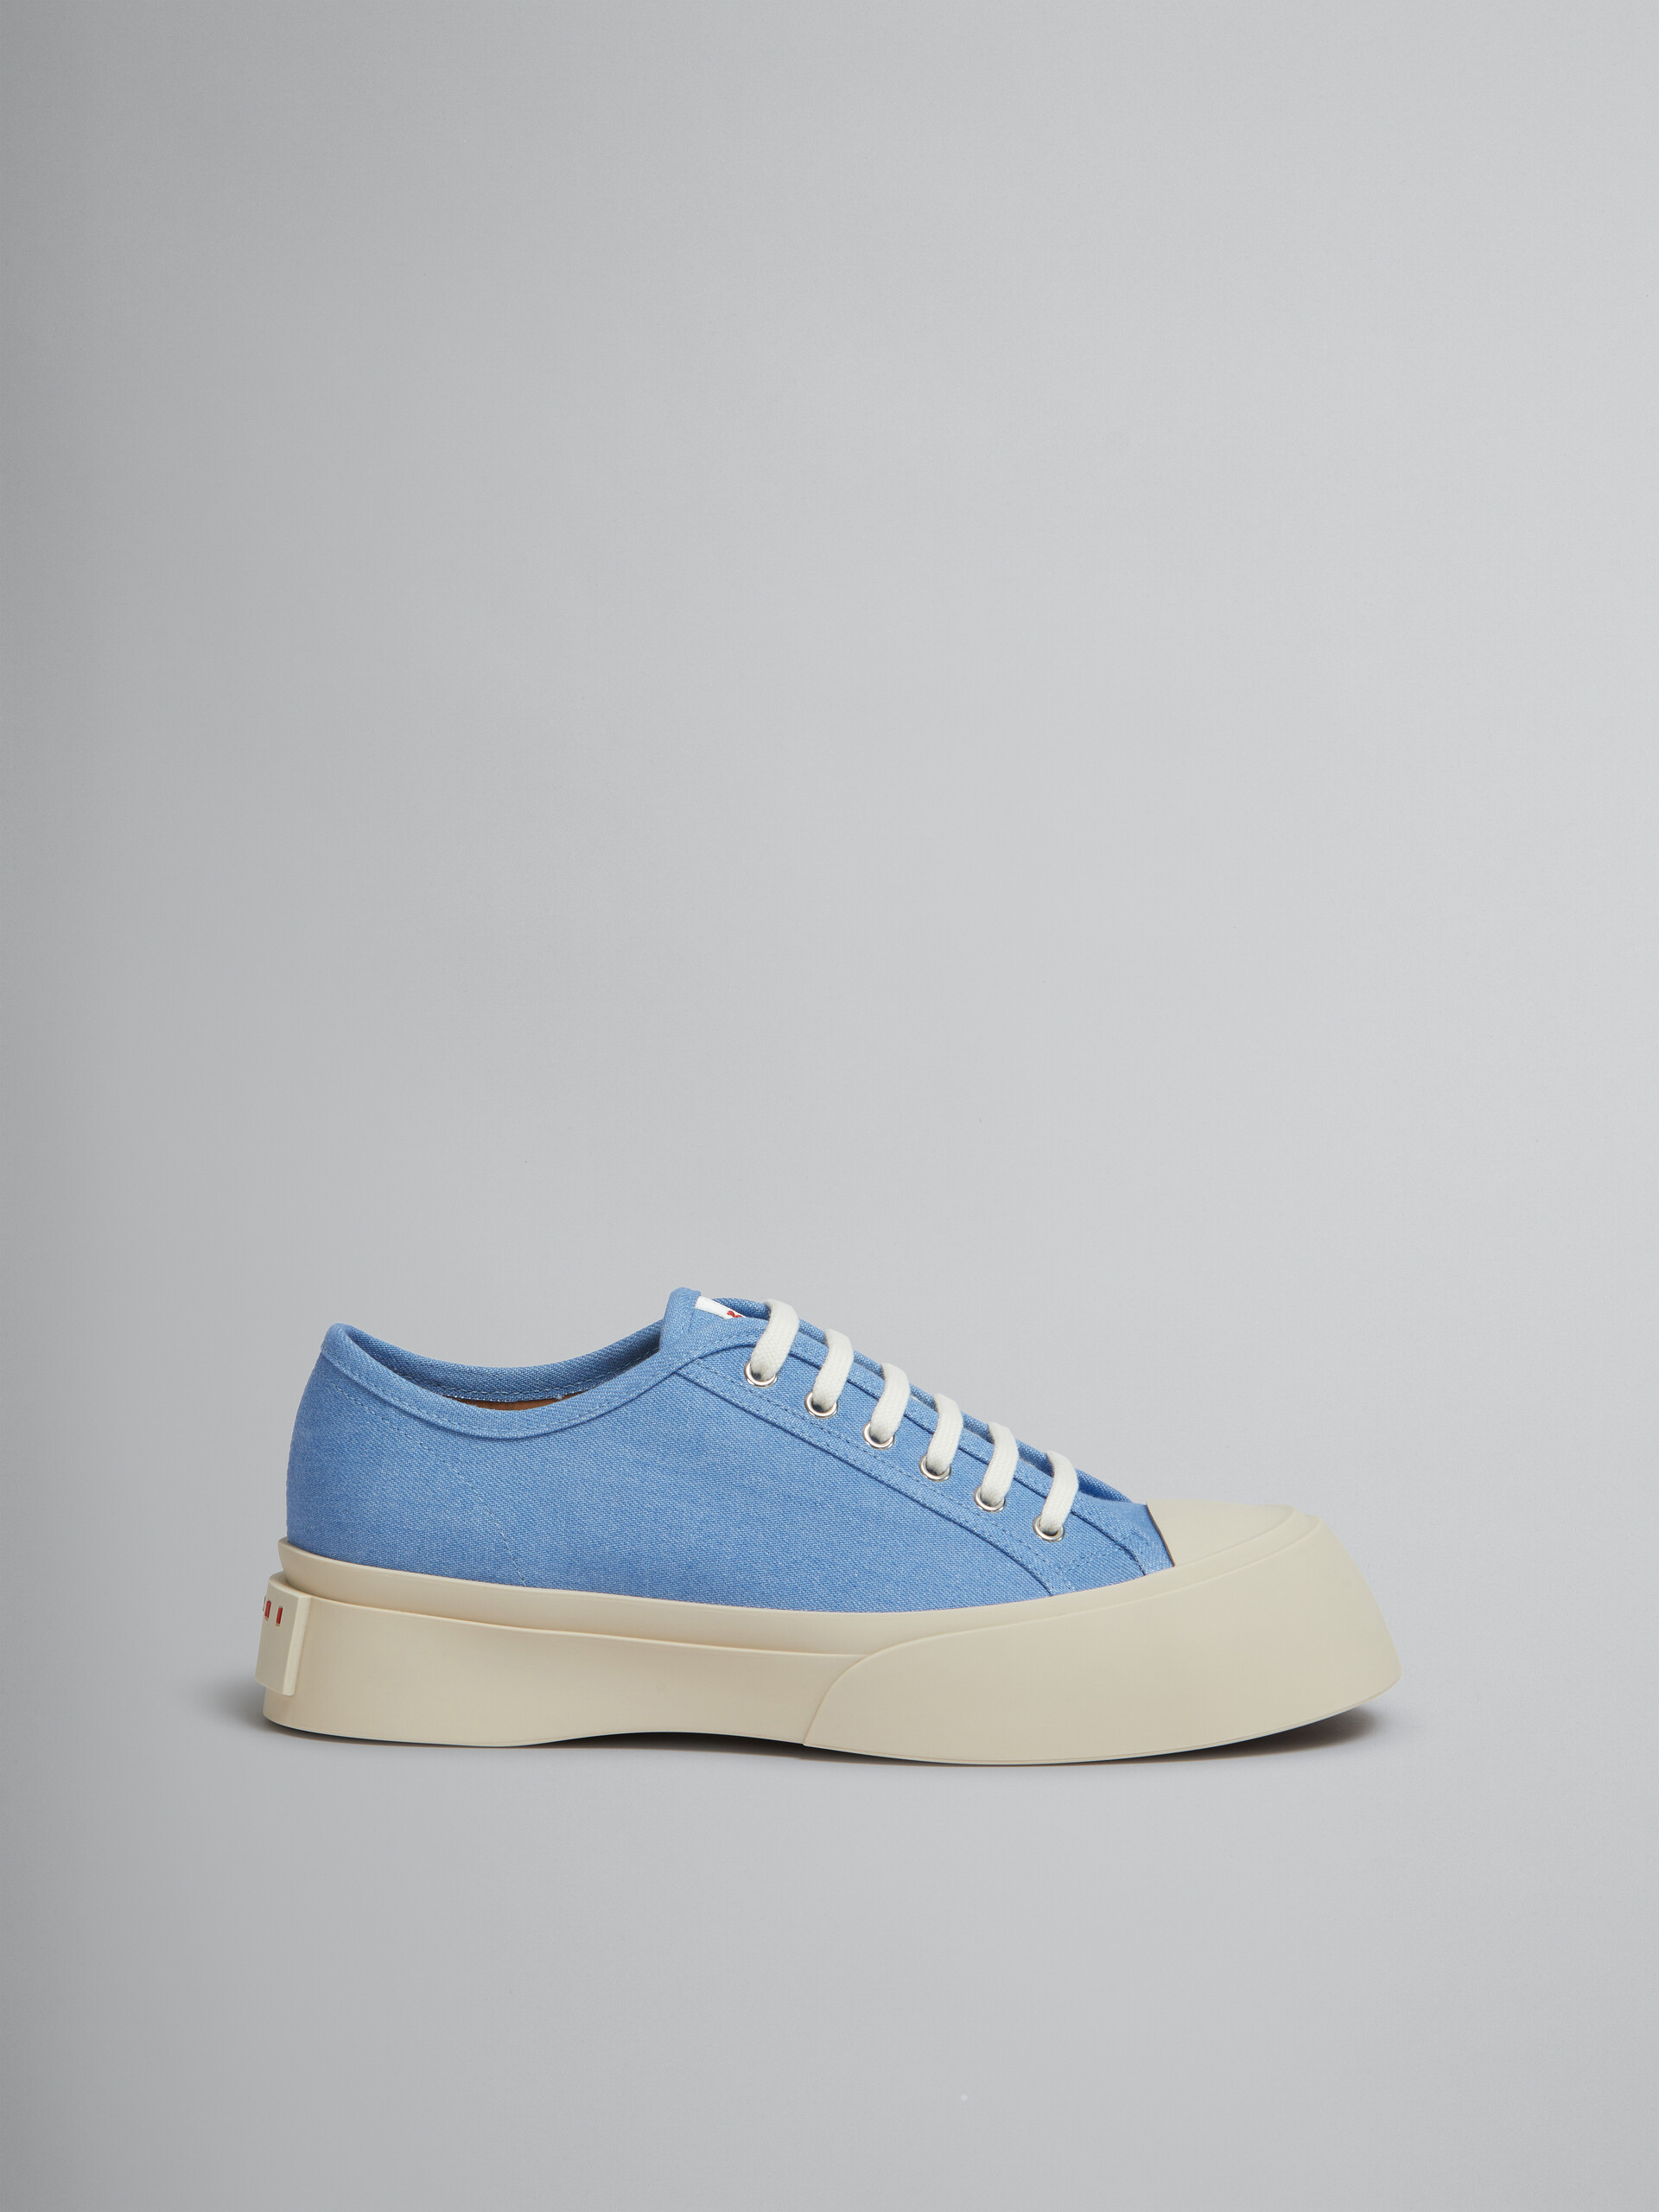 Sneakers à lacets Pablo en denim bleu clair - Sneakers - Image 1